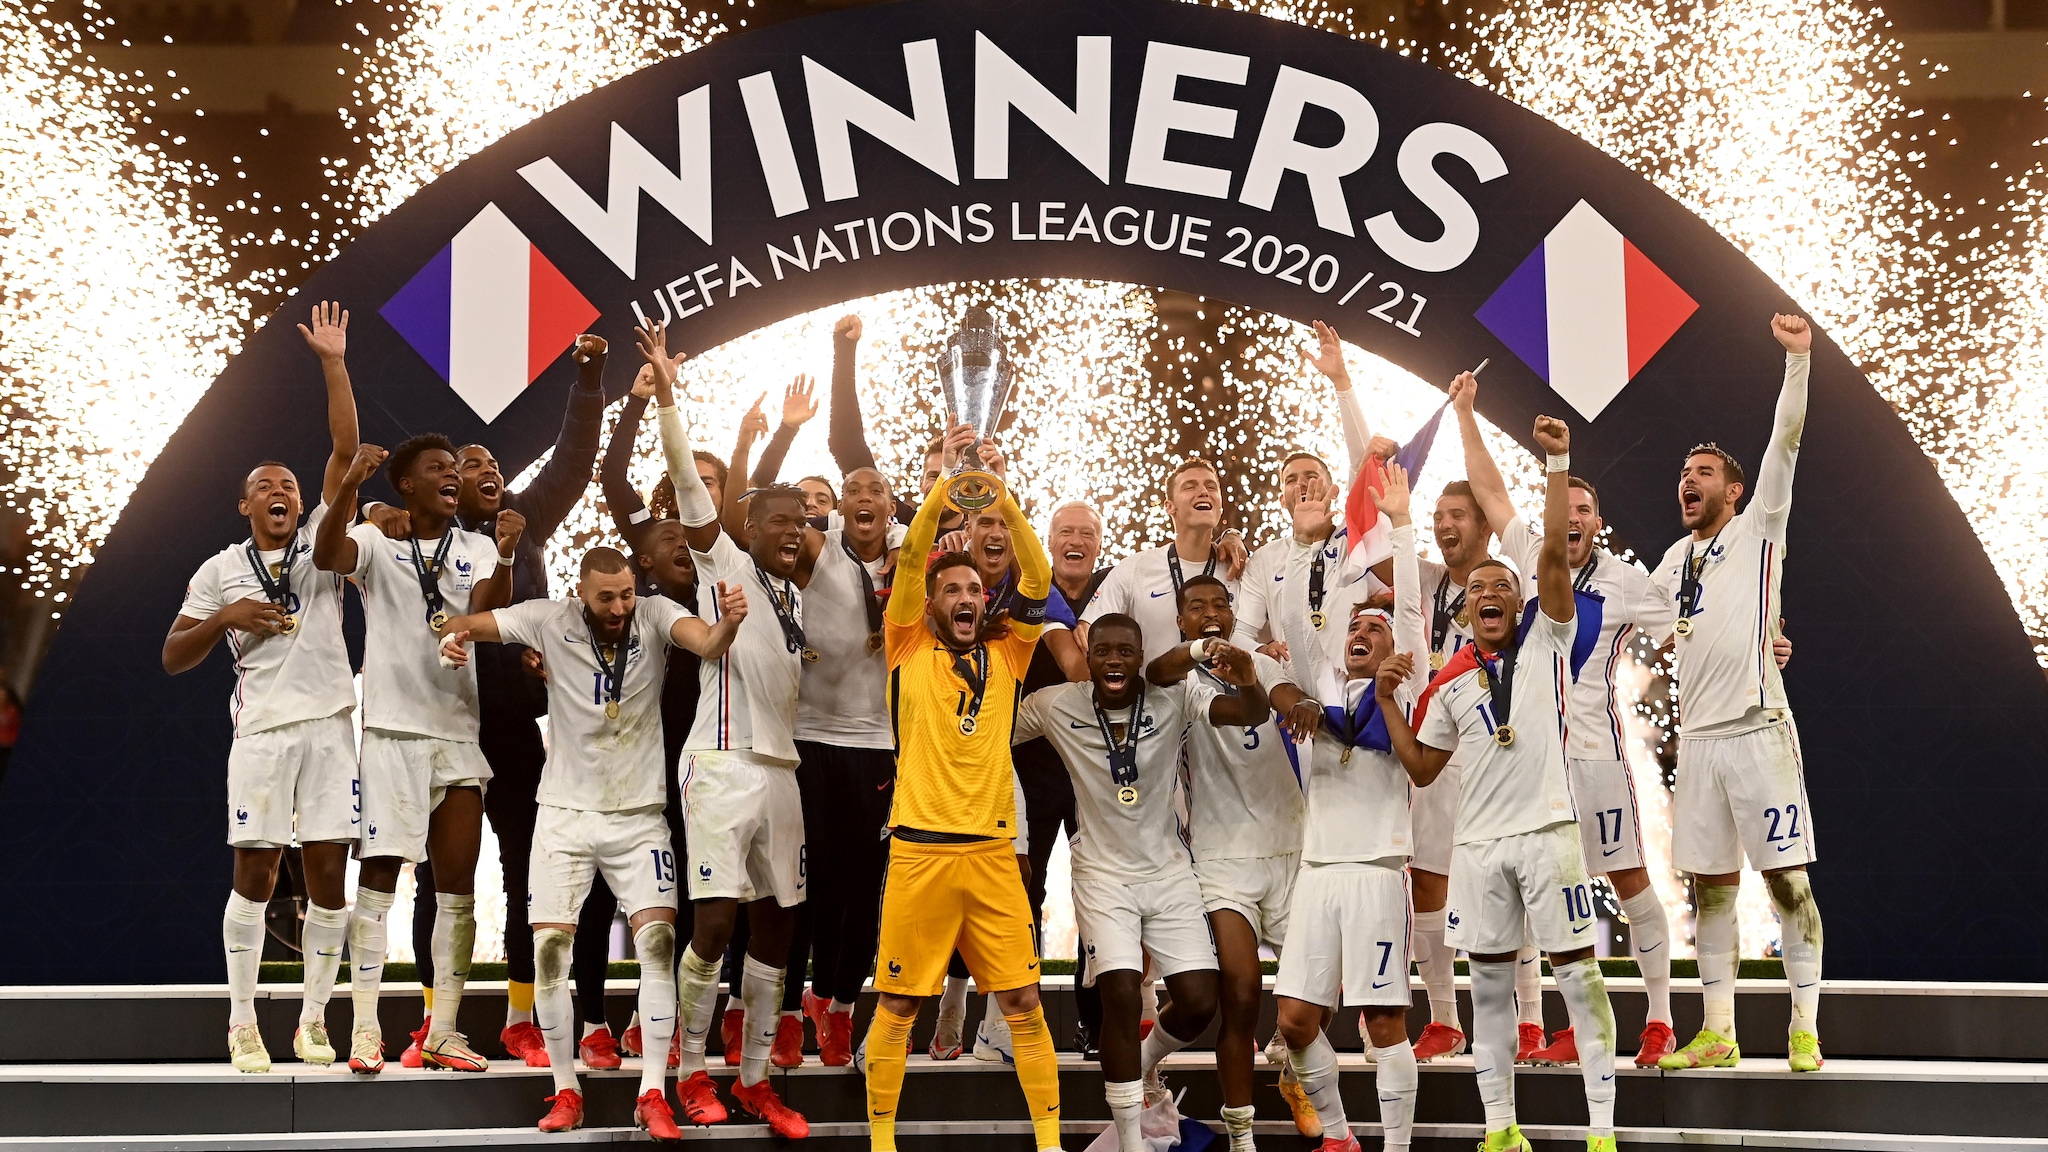 Liga de naciones ganadores